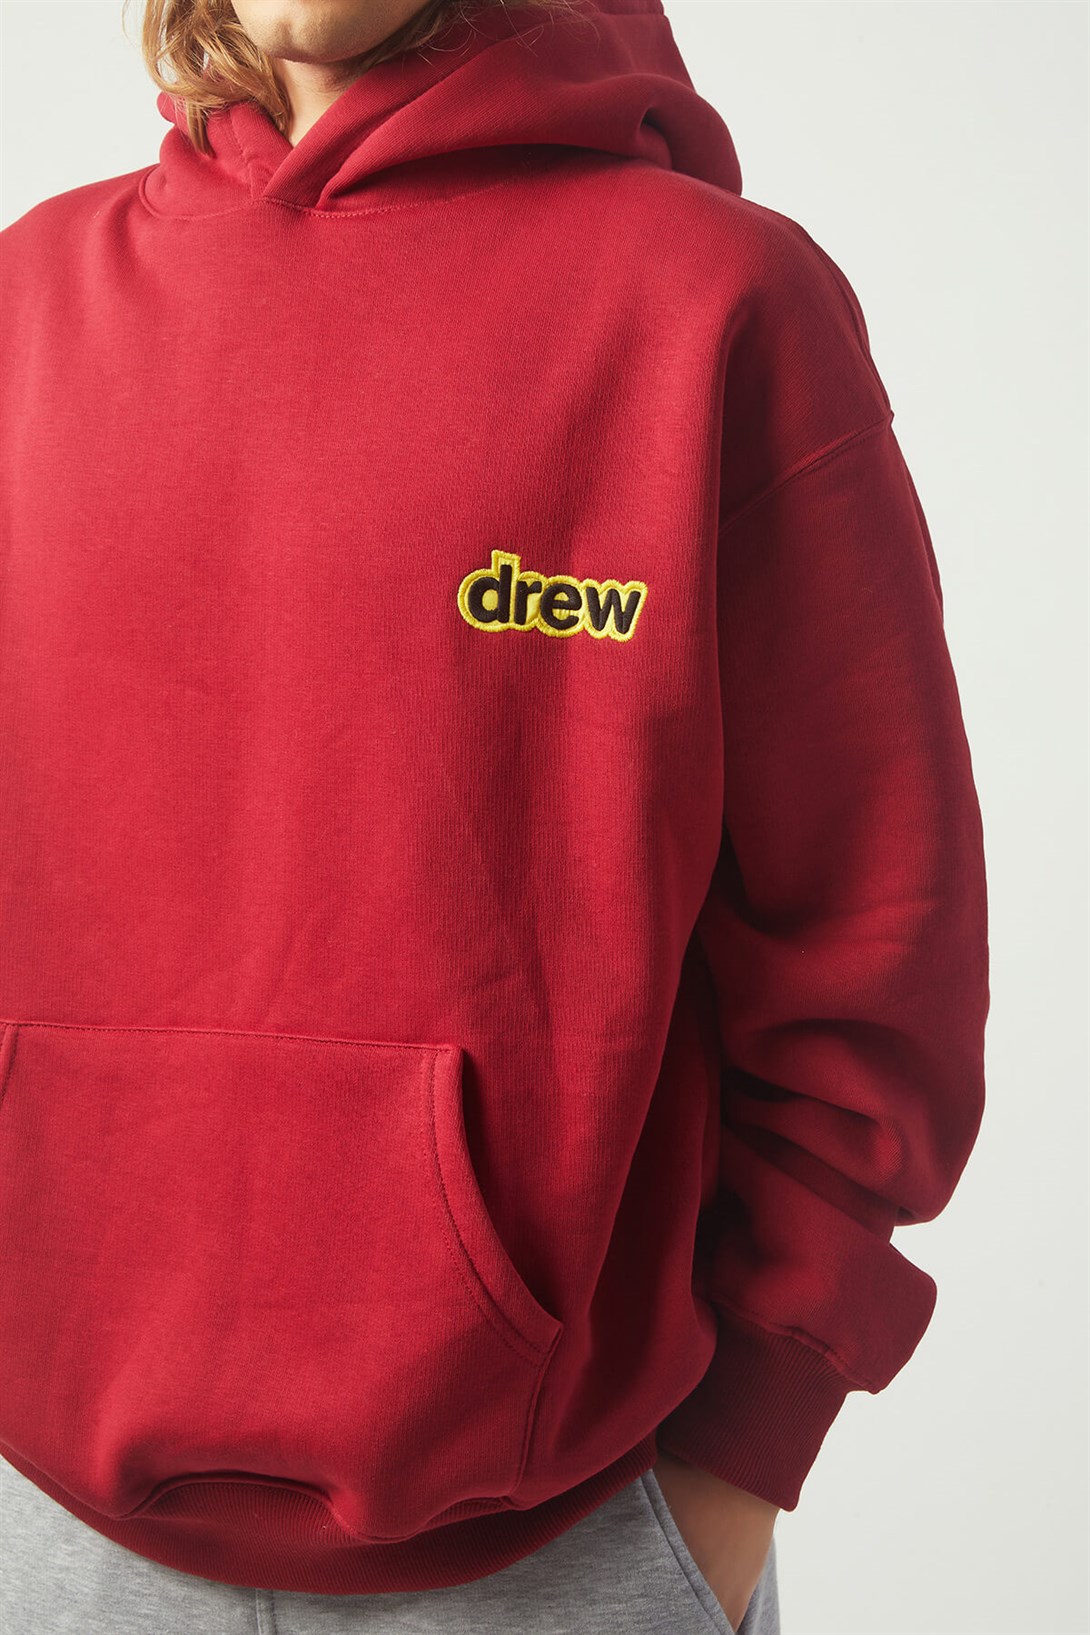 Trendiz Drew Bear Oversıze Sweatshirt Bordo TR30011